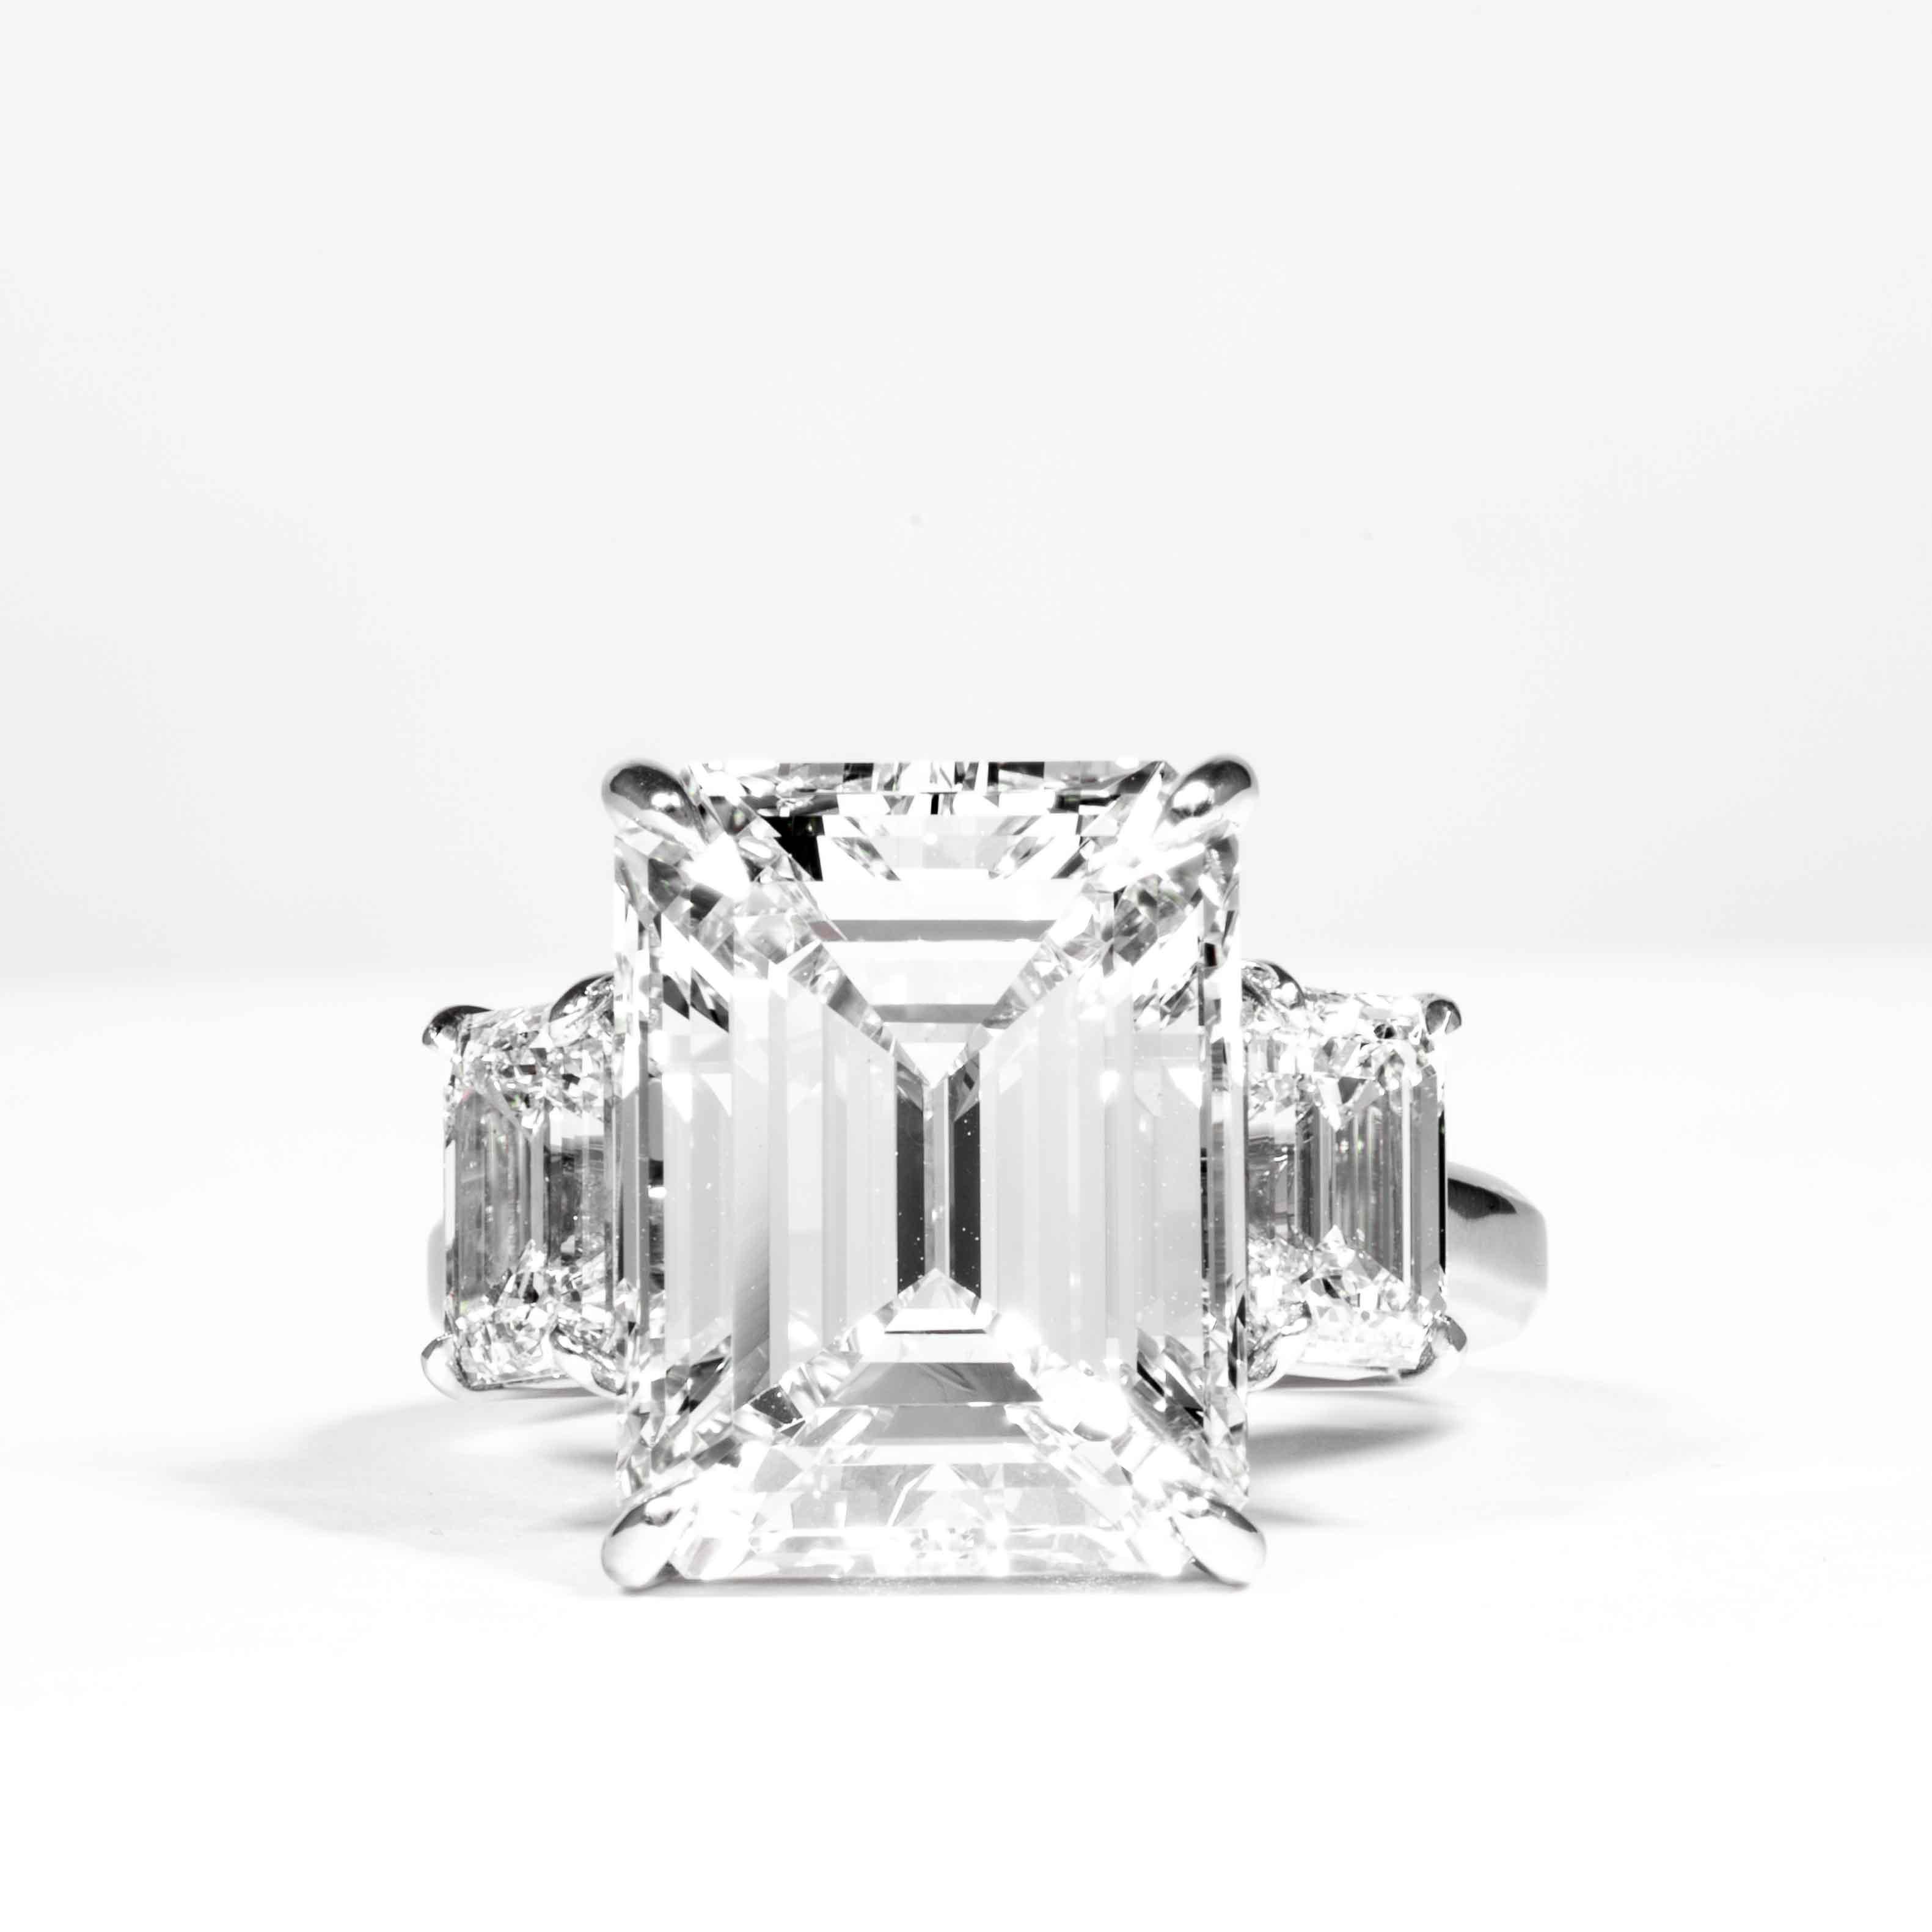 Cette bague en diamant à 3 pierres est offerte par Shreve, Crump & Low. Ce diamant taille émeraude de 10,75 carats certifié GIA K VS2 mesurant 14,35 x 11,08 x 7,43 mm est serti sur mesure dans une bague à trois pierres en platine fabriquée à la main